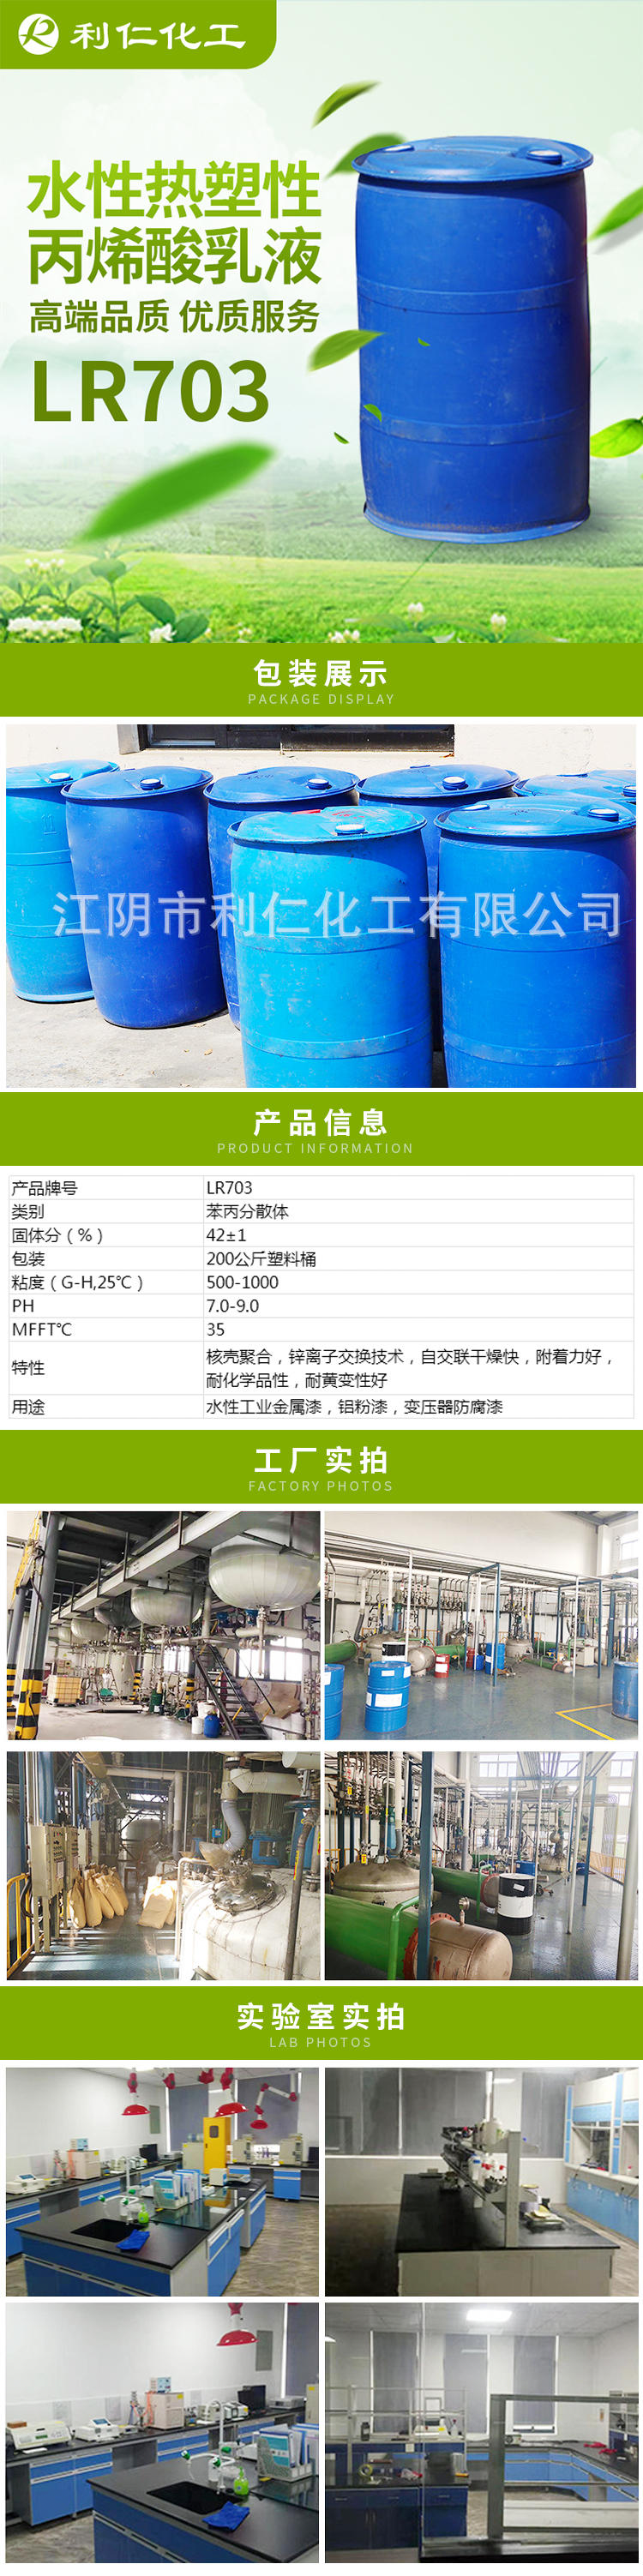 水性树脂-水性热塑性丙烯酸乳液-lr703商品详情.jpg